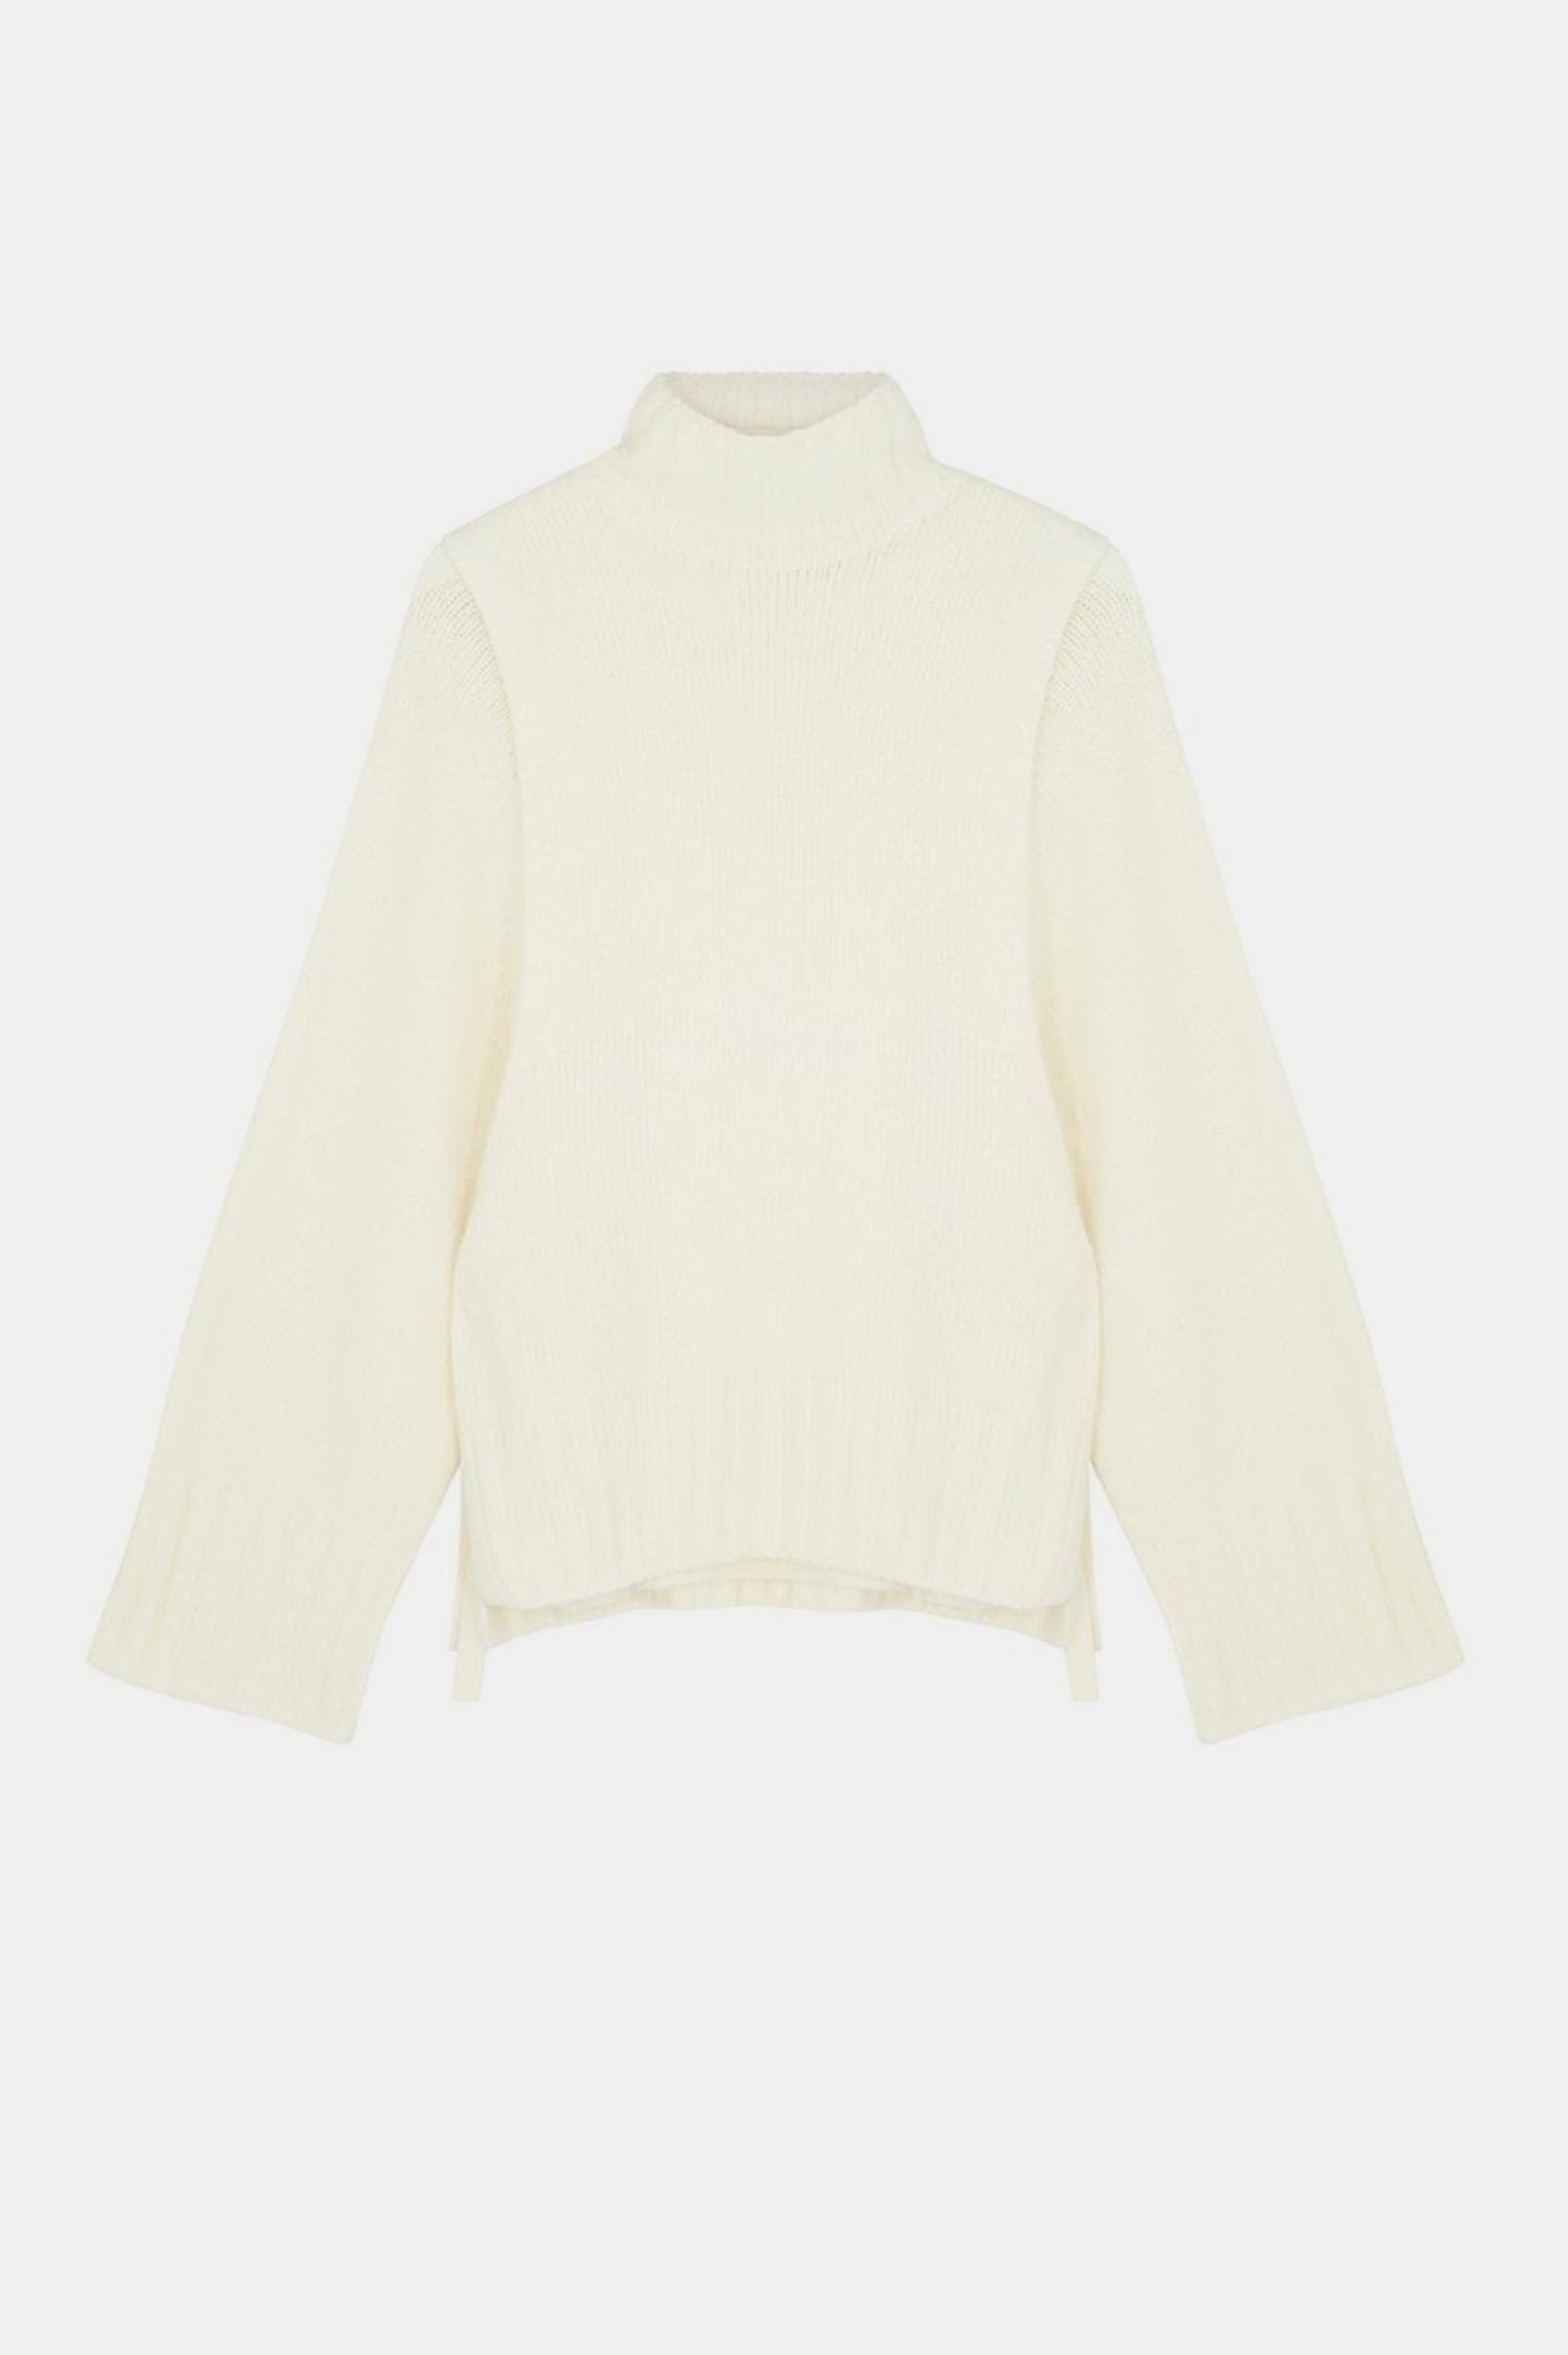 Escapee Sweater Vest Combo in Cream